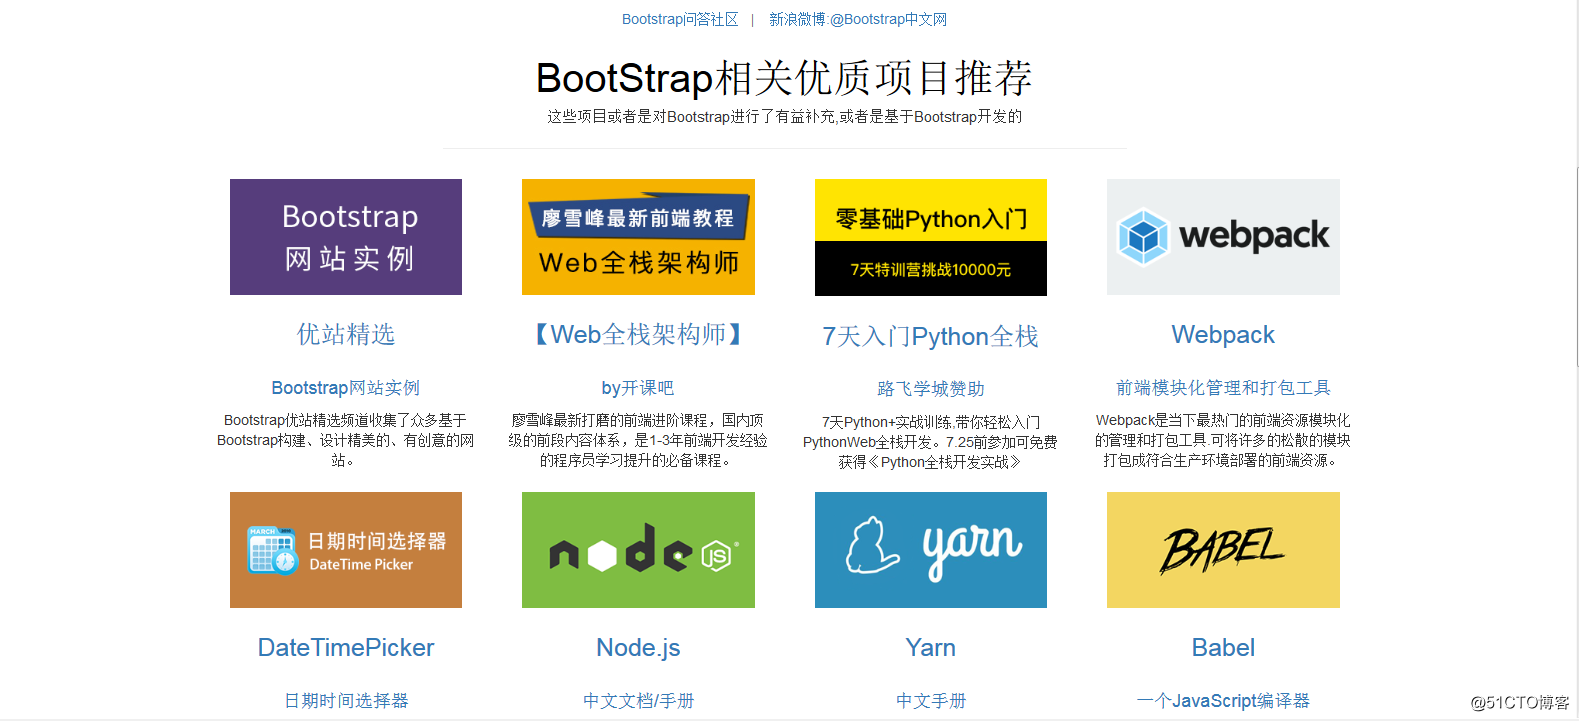 用Bootstrap知识写简易版Bootstrap官方网站首页